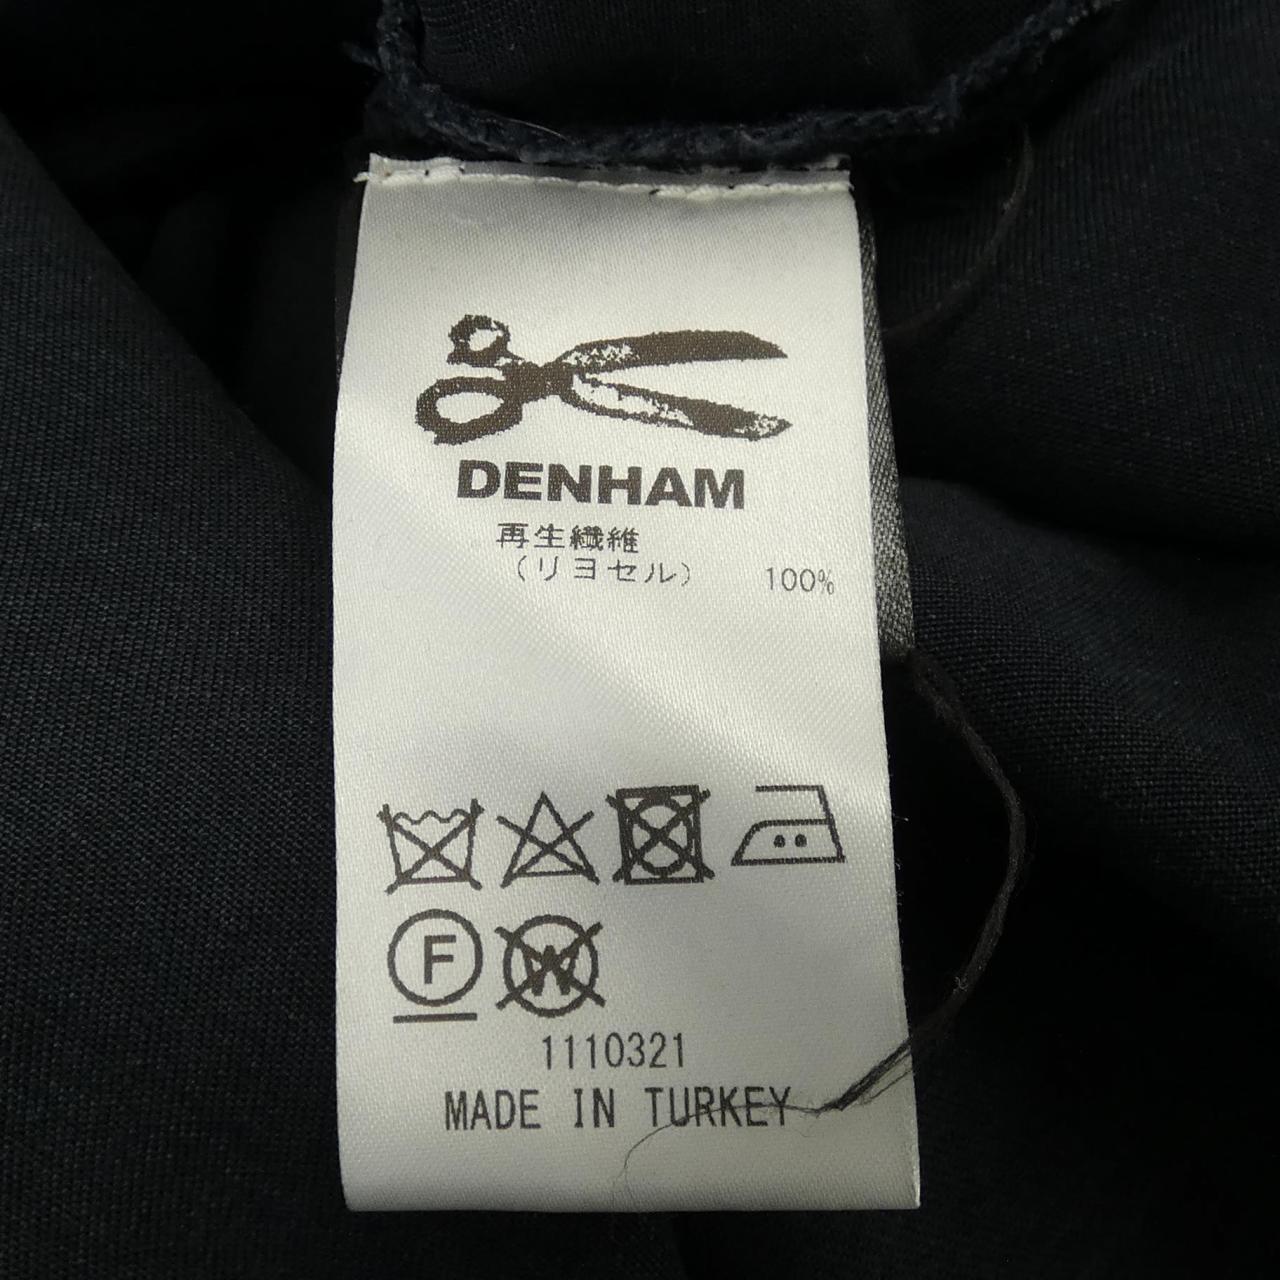 DENHAM shirt